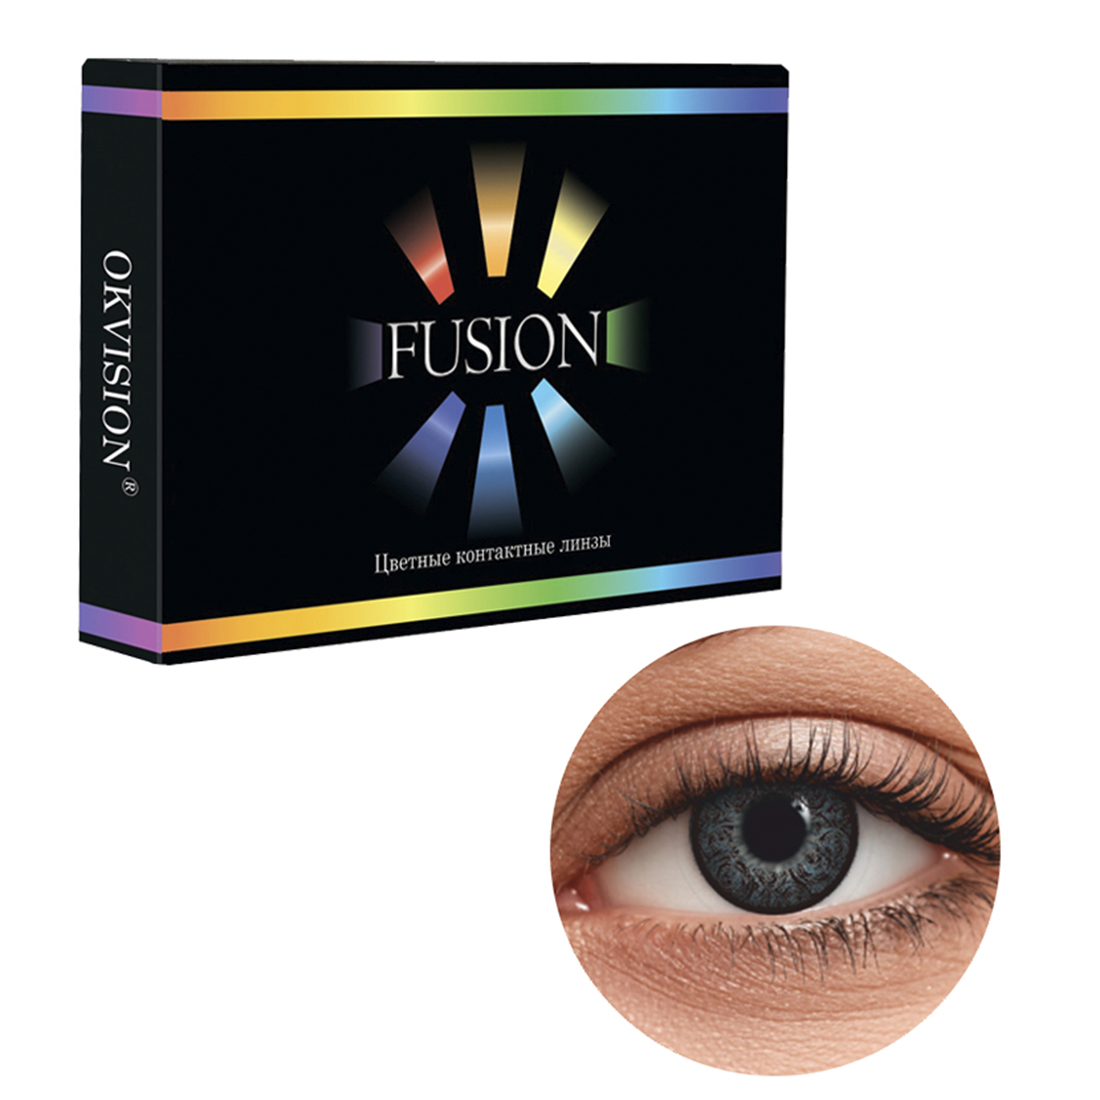 Цветные контактные линзы OKVision Fusion monthly R 8.6 -4.00 цвет Ivory Black 2 шт 1 месяц - фото 1